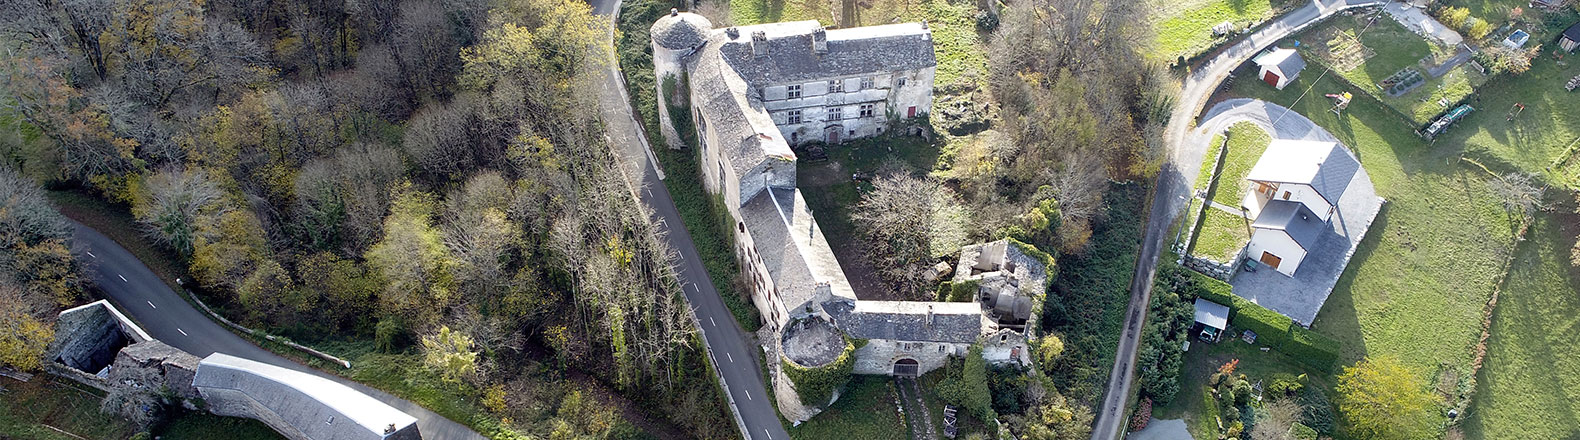 chateau de Ferrieres